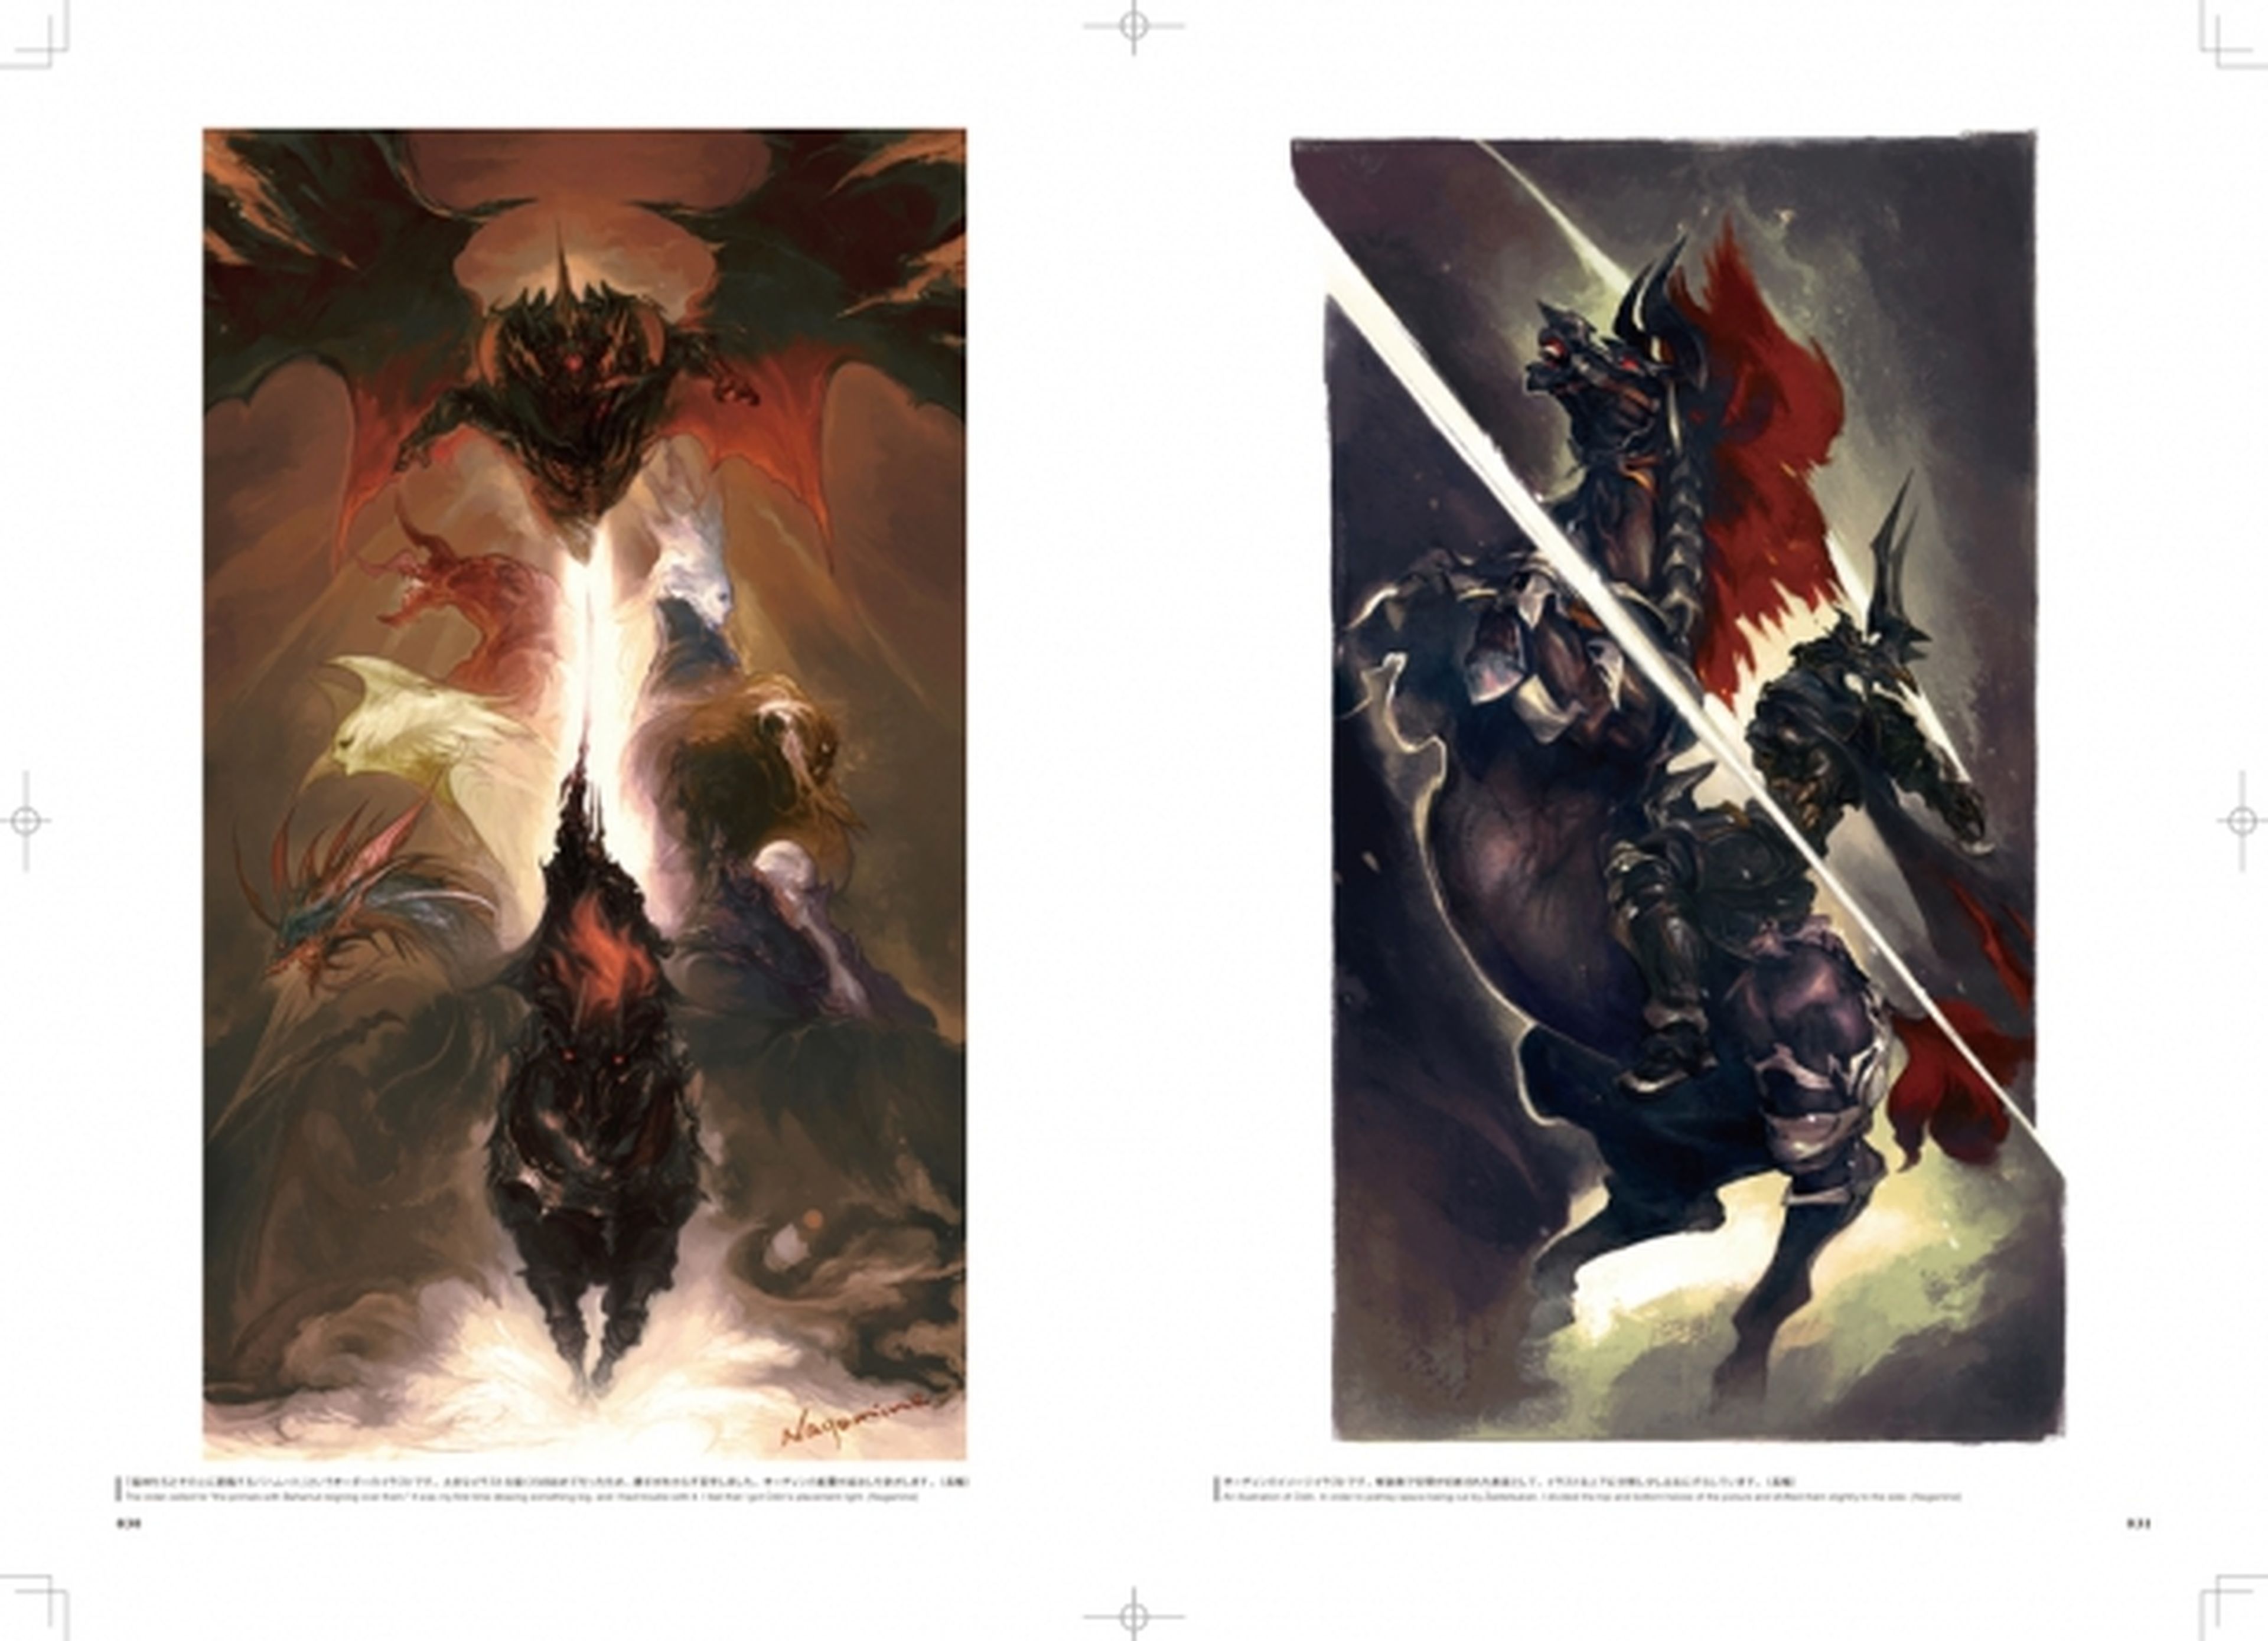 El libro de arte de Final Fantasy XIV, ya disponible en España